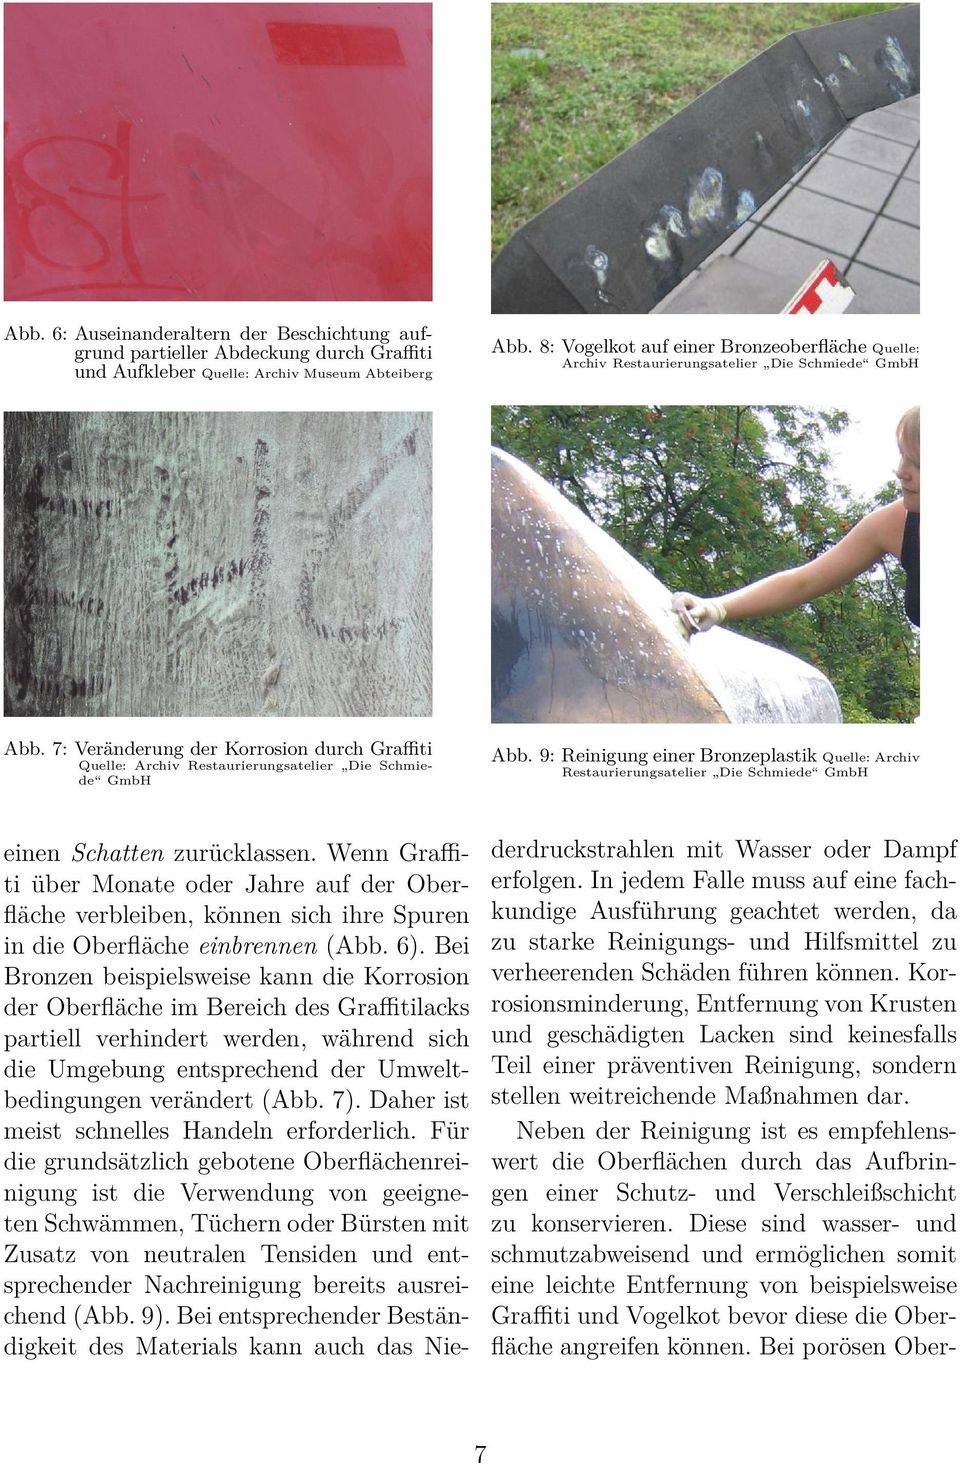 7: Veränderung der Korrosion durch Graffiti Quelle: Archiv Restaurierungsatelier Die Schmiede GmbH Abb.